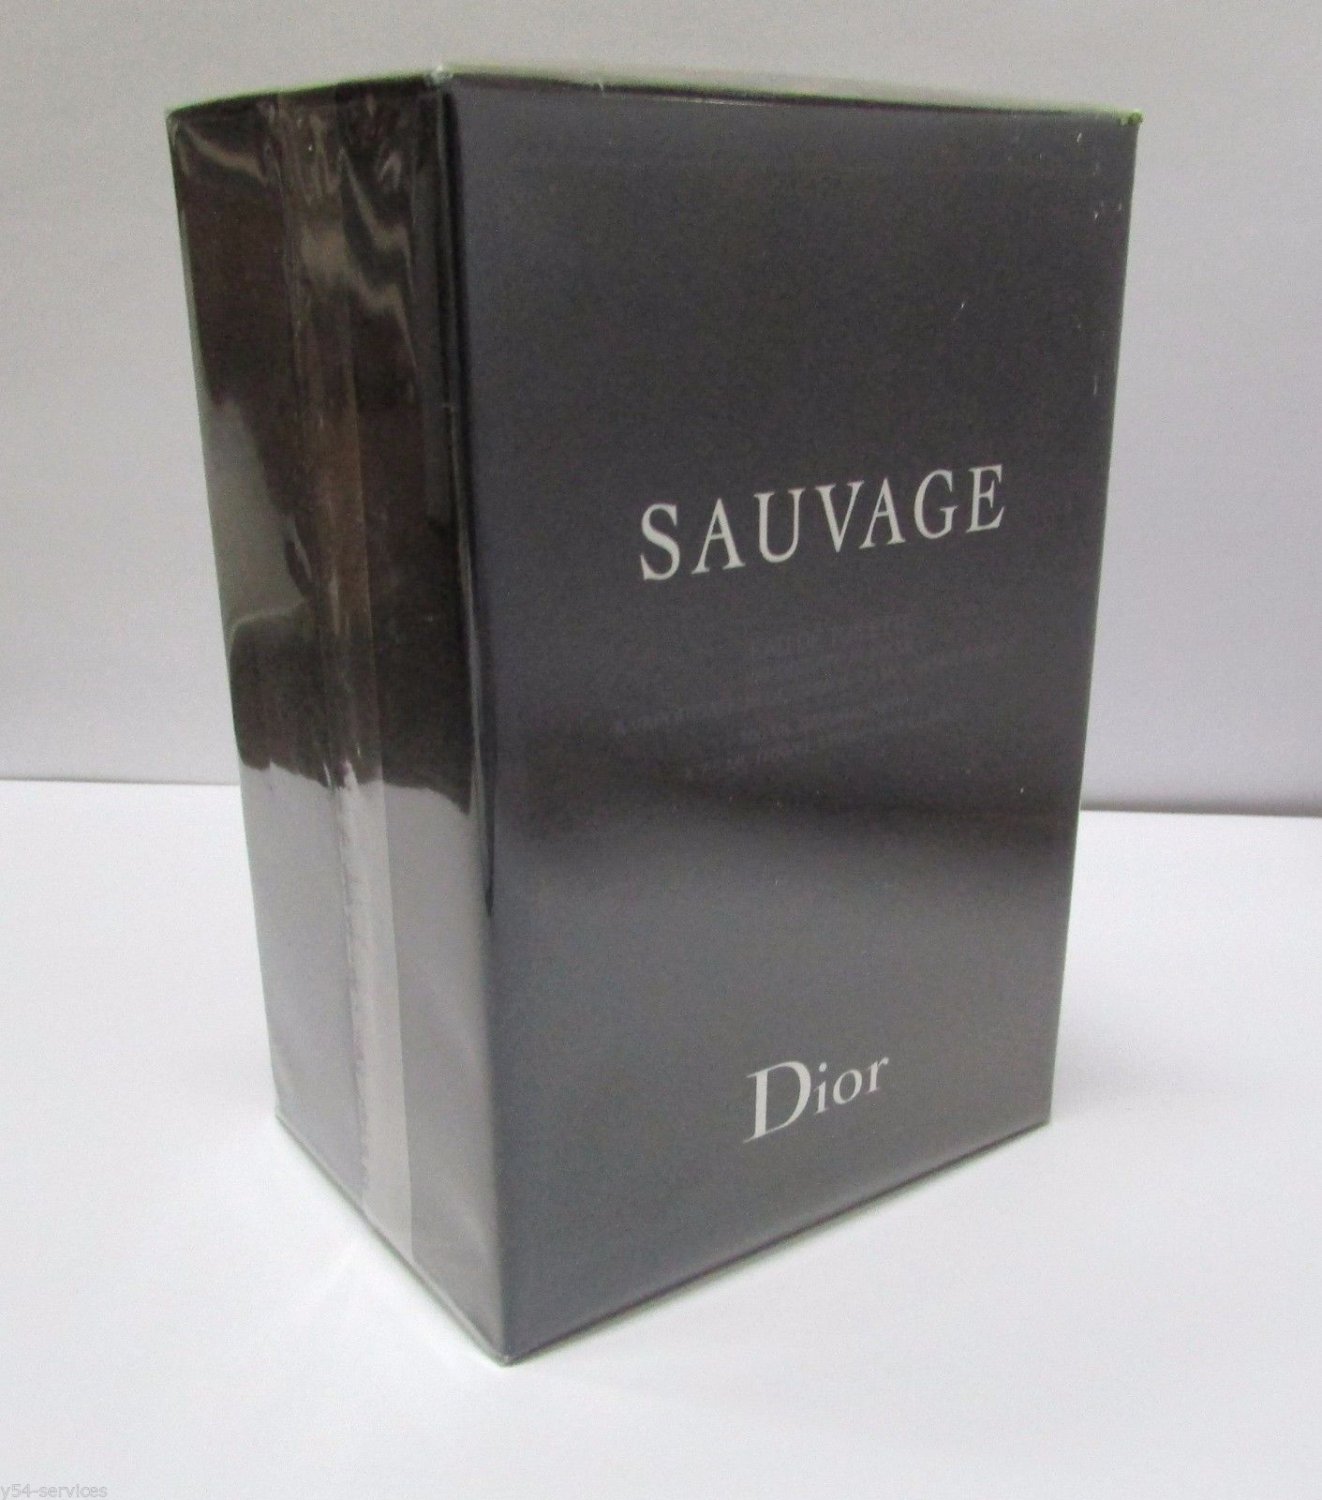 Christian Dior SAUVAGE EDT 100ml 3.4oz + TRAVEL SPRAY 7.5ml 0.25oz NEW